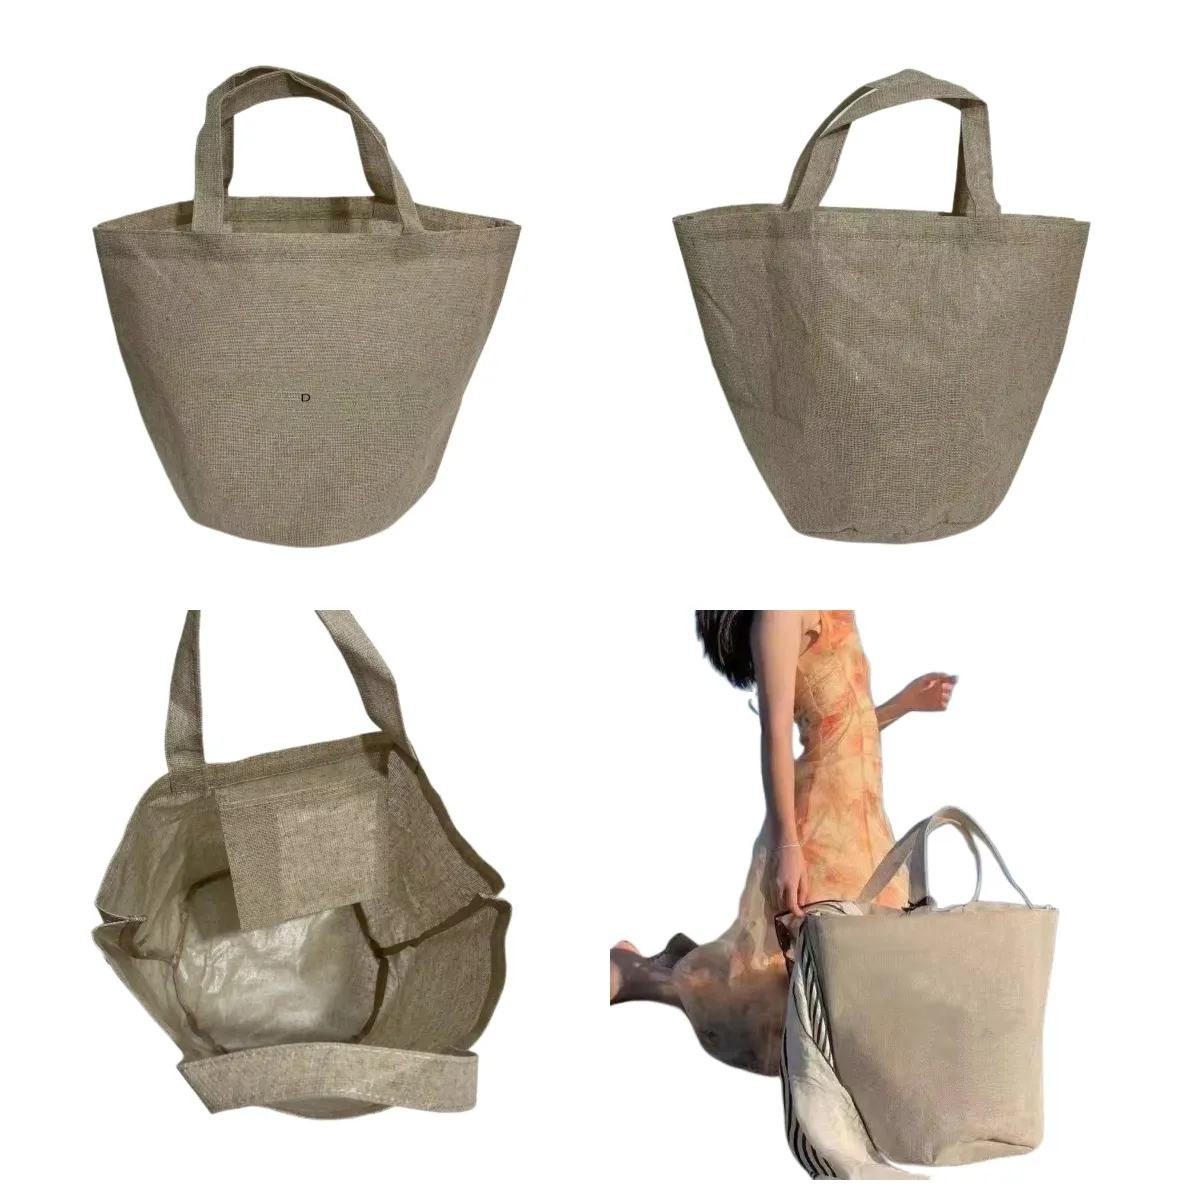 حقيبة الشاطئ حمل - كل حقيبة تخزين مقاوم للماء - نمط عصري أنيق يسهل إحضاره إلى الشاطئ أو حمام السباحة